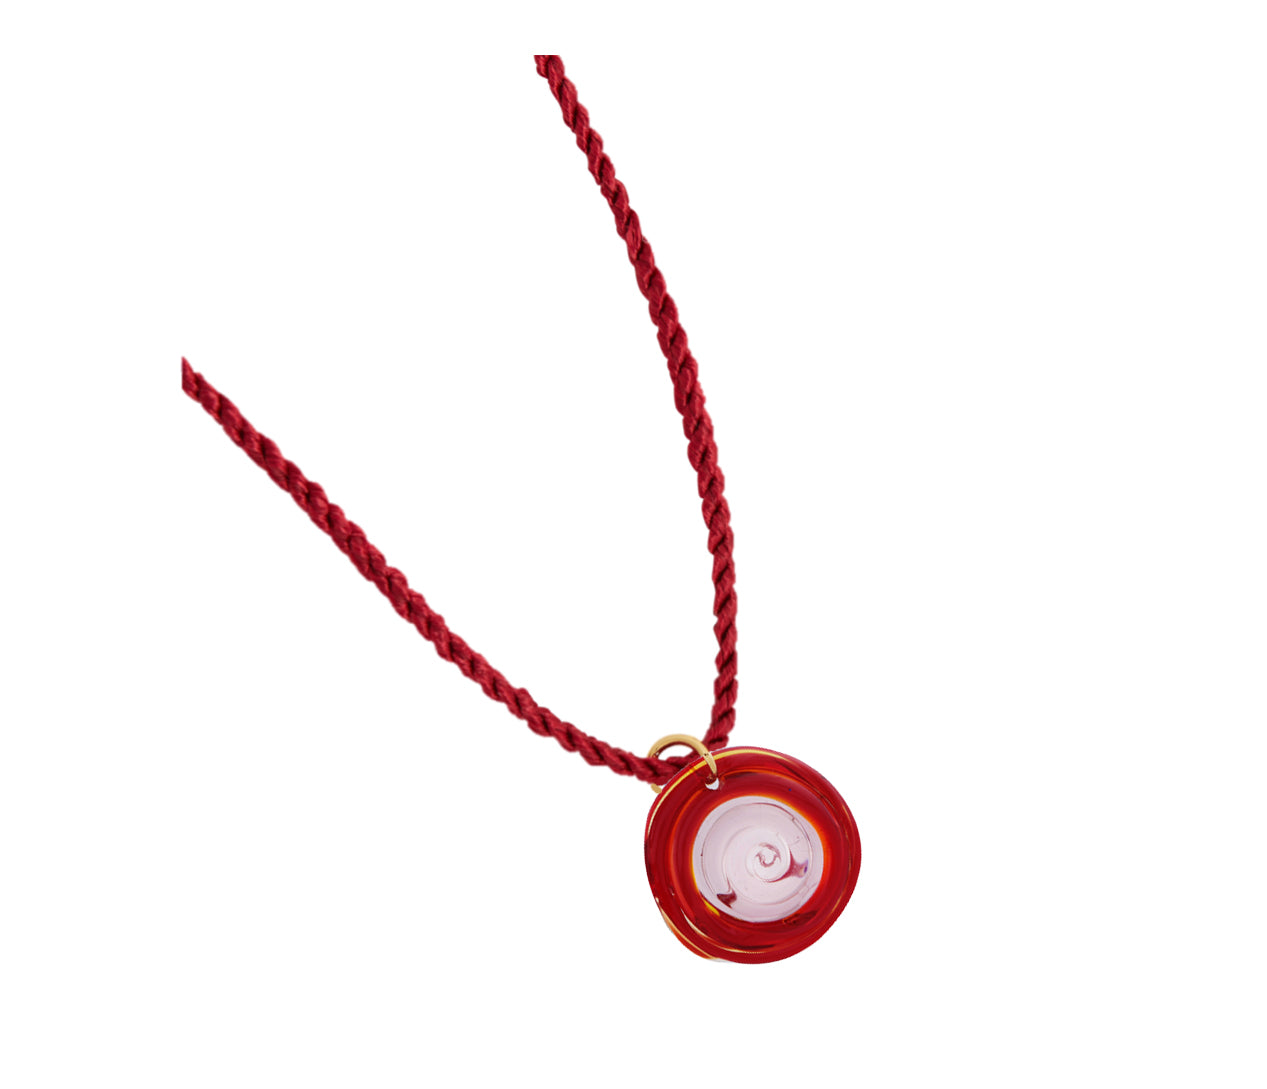 Dapia Sea Urchin Glass & Silk Cord Necklace